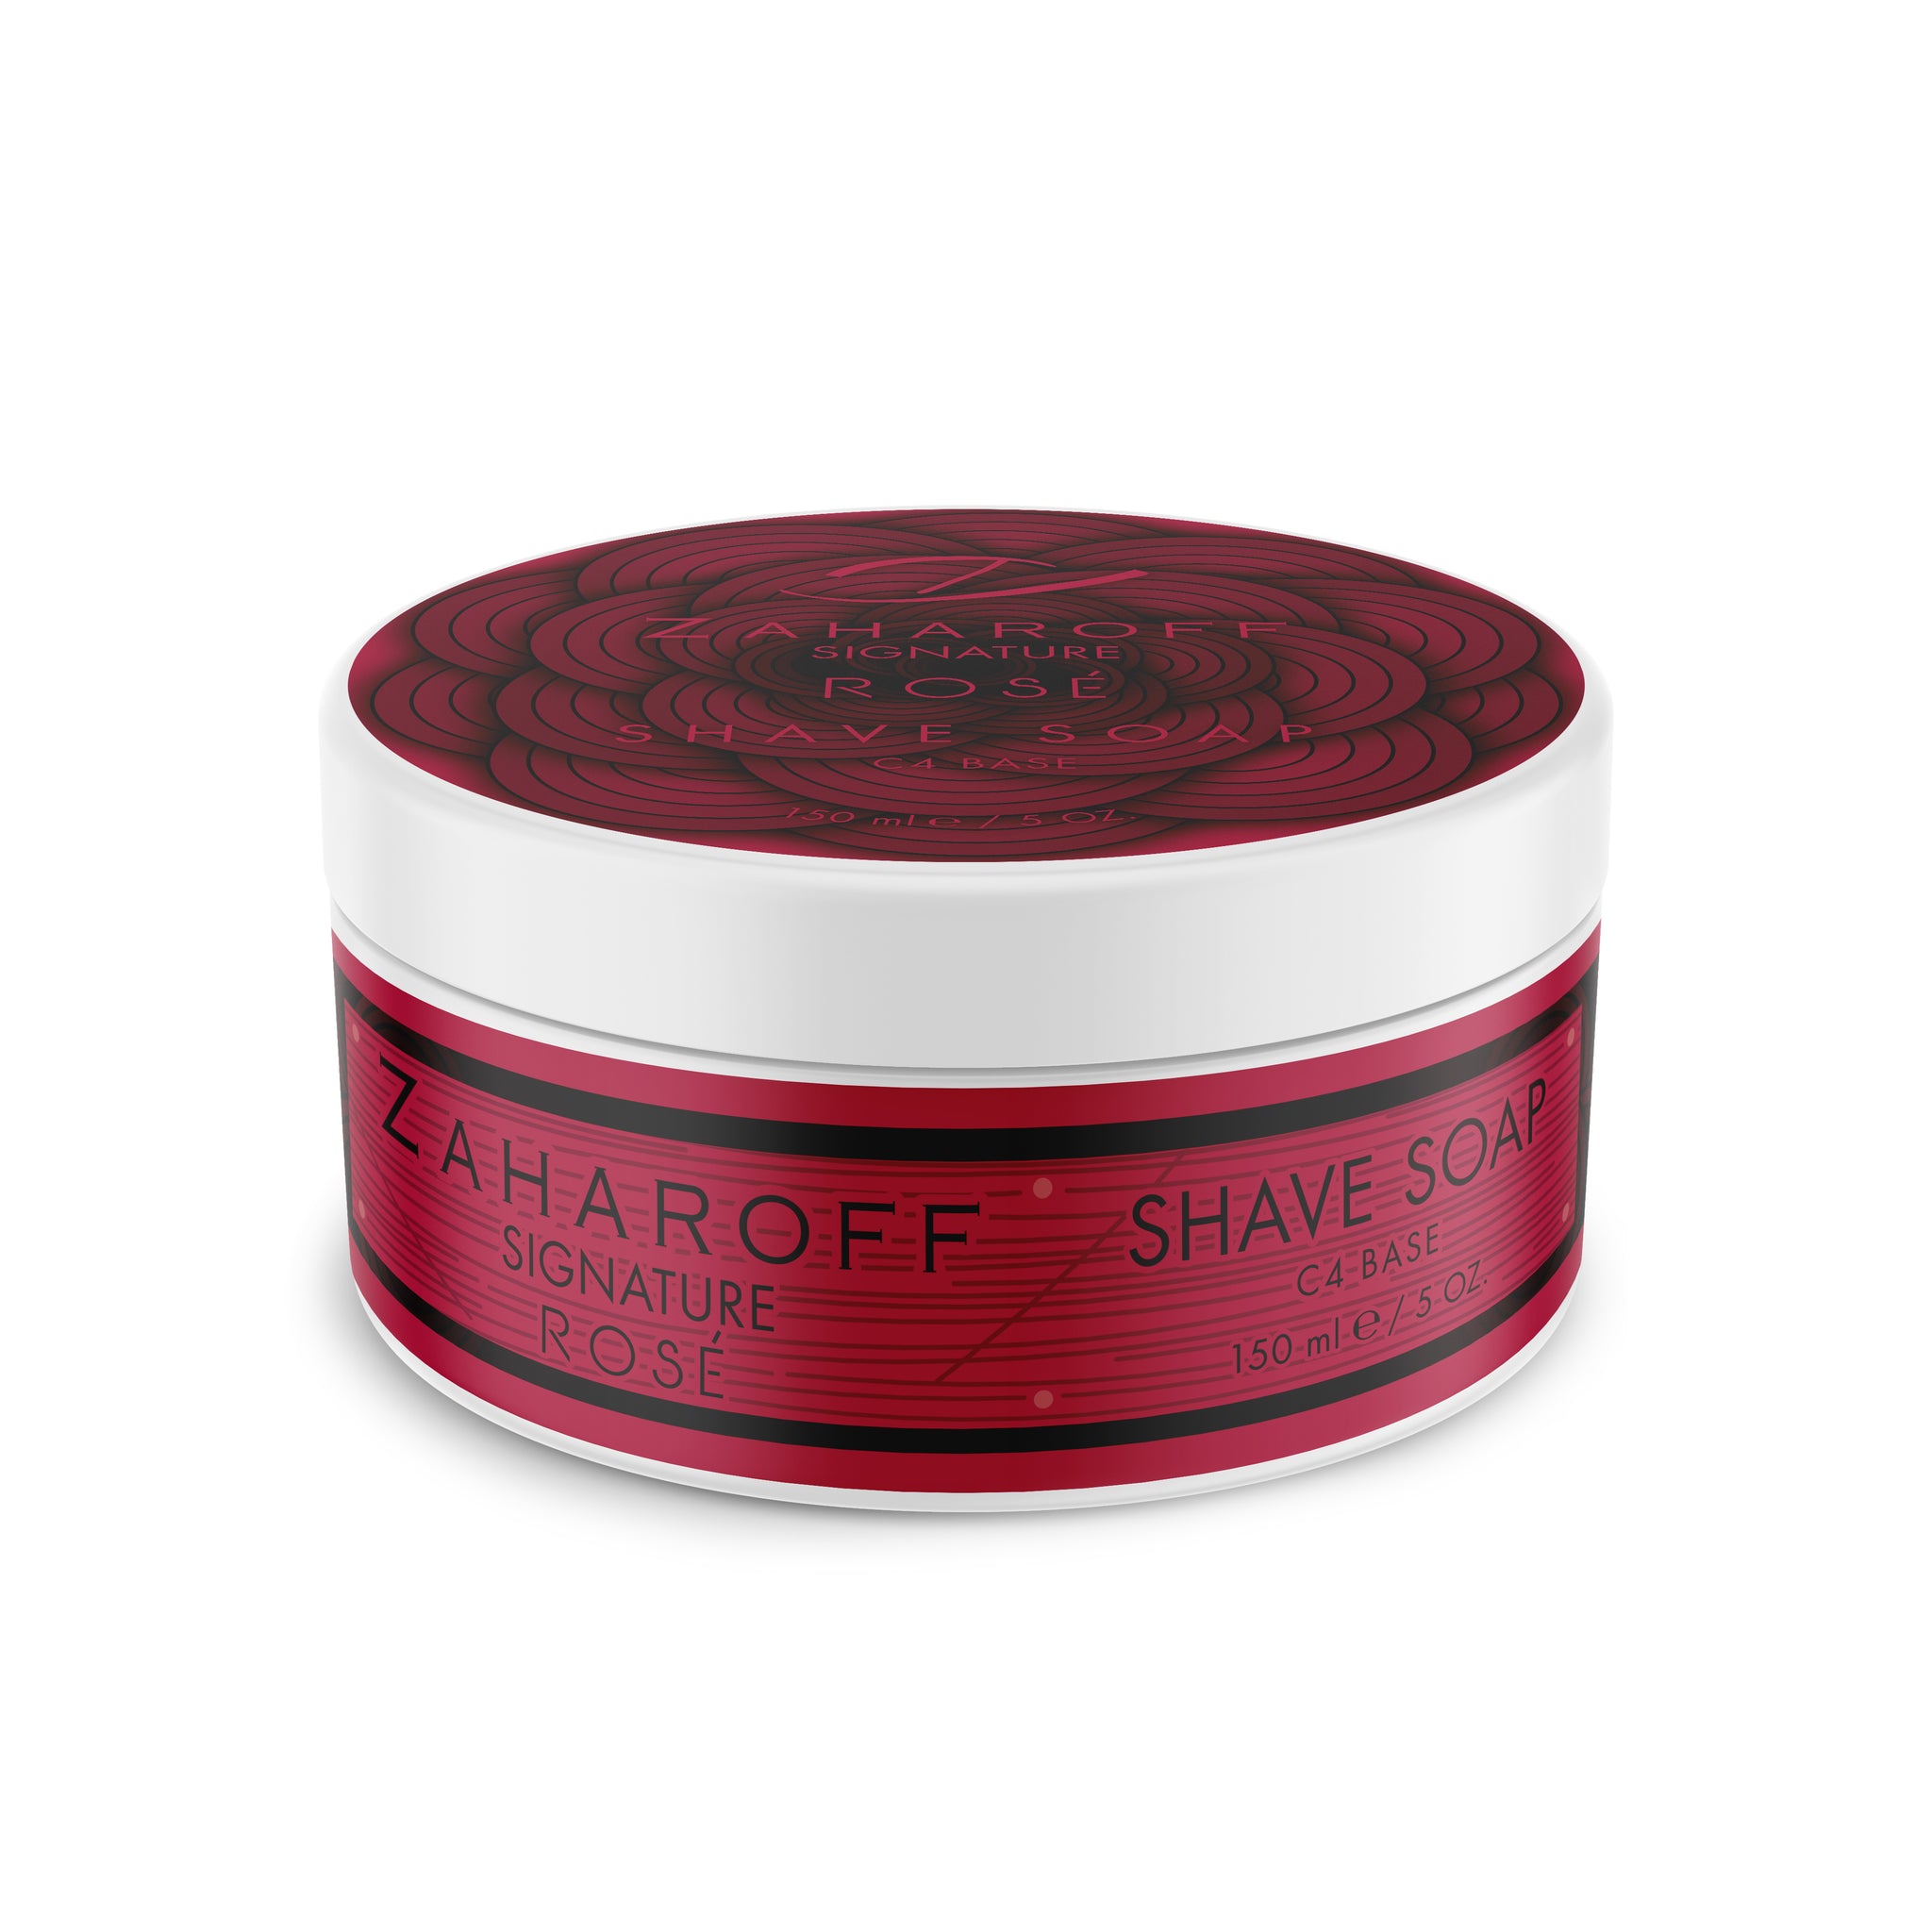 Zaharoff Signature ROSÈ Shave Soap